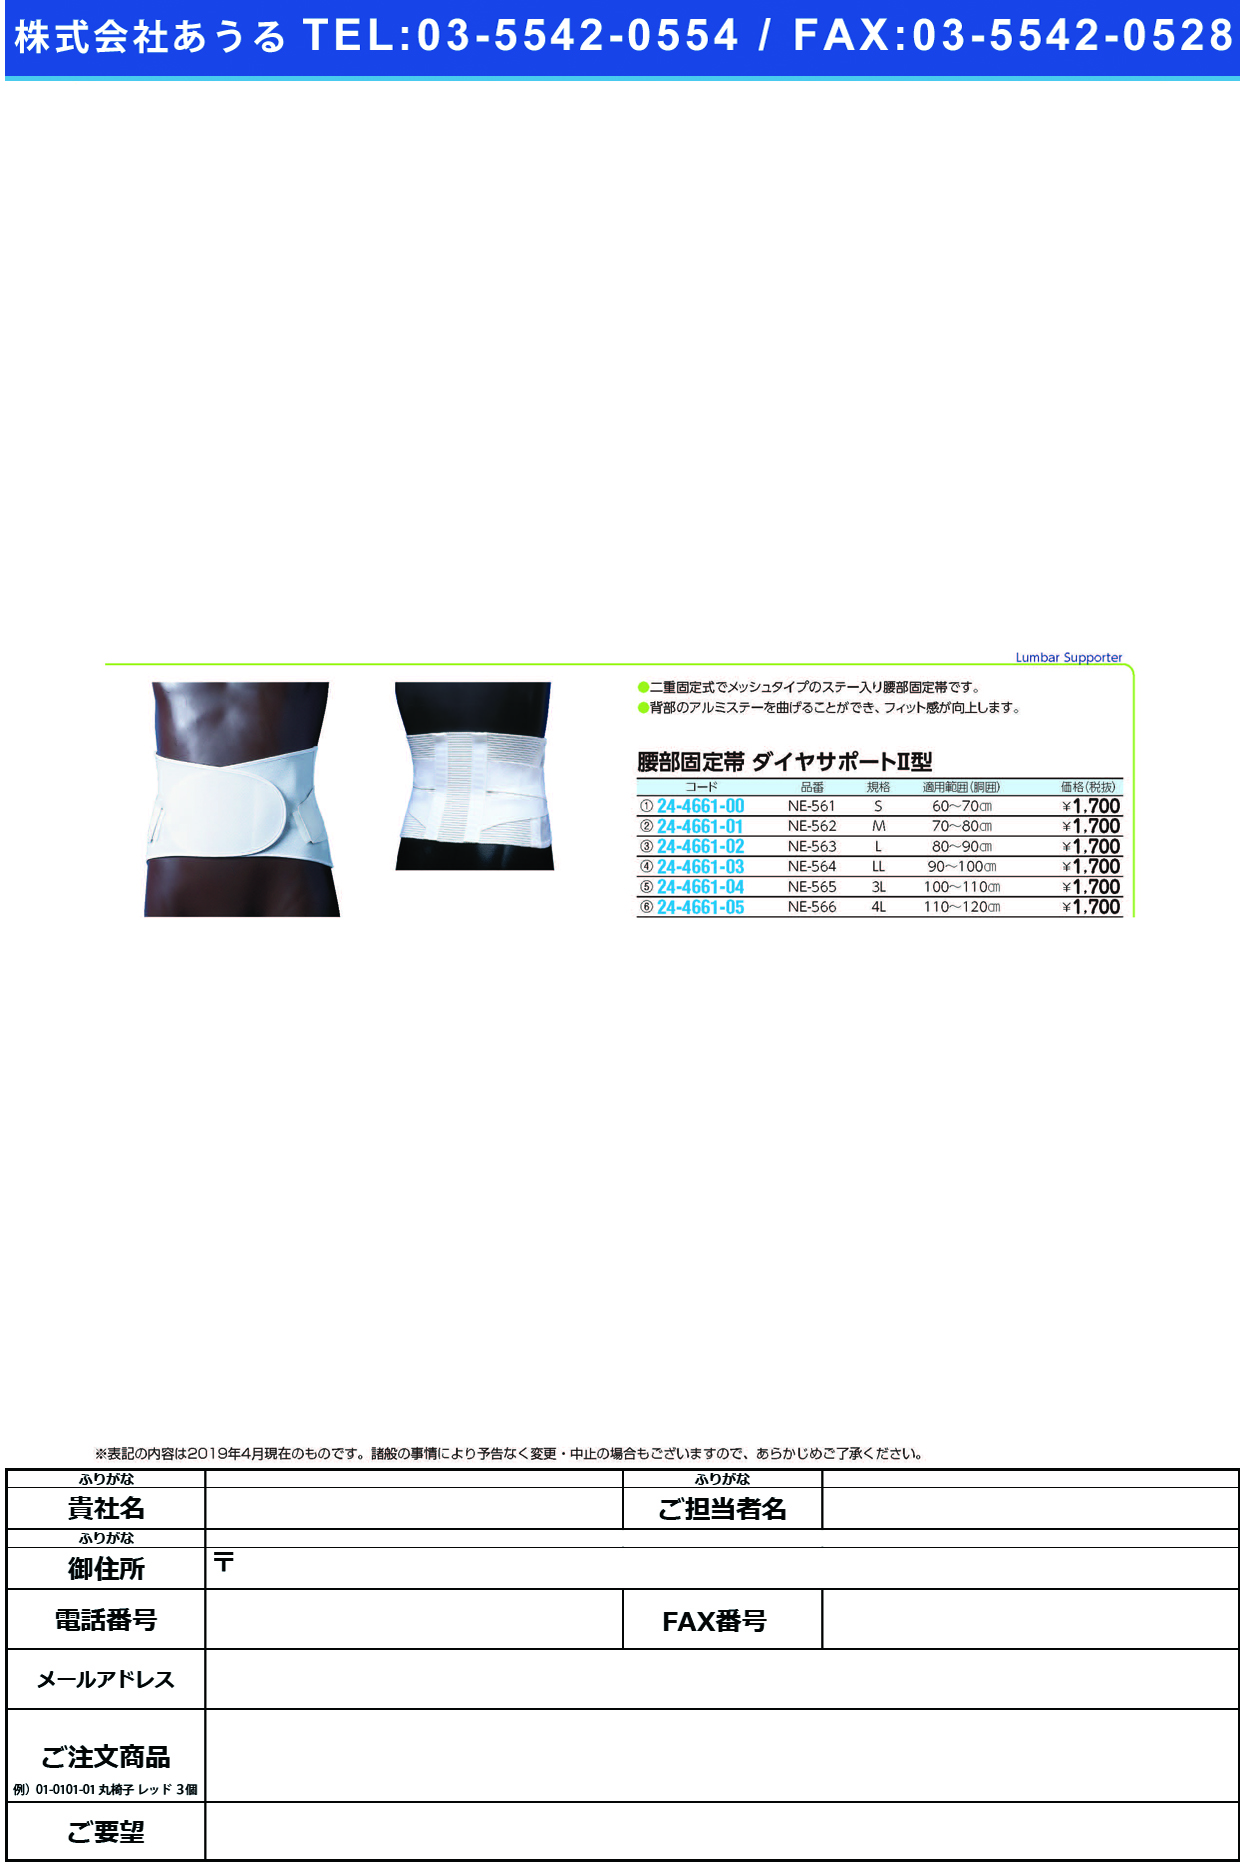 (24-4661-03)ダイヤサポート?型（ＬＬ） NE-564(90-100CM) ﾀﾞｲﾔｻﾎﾟｰﾄ2ｶﾞﾀLL(日本衛材)【1箱単位】【2019年カタログ商品】